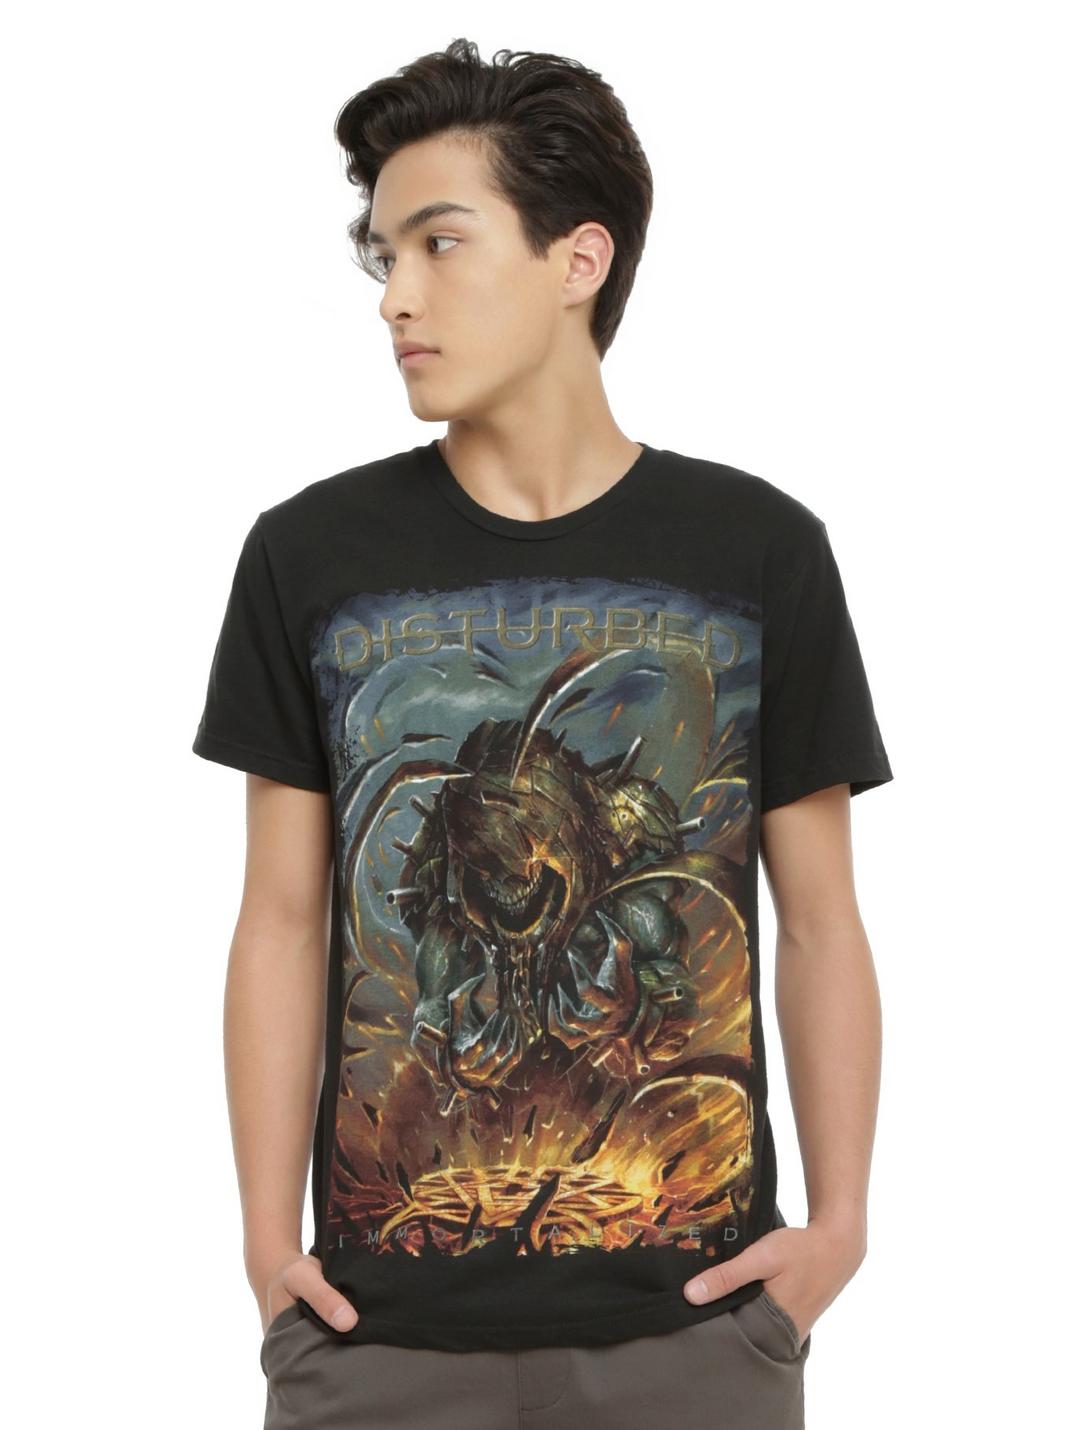 Disturbed Immortalized T-Shirt, BLACK, hi-res